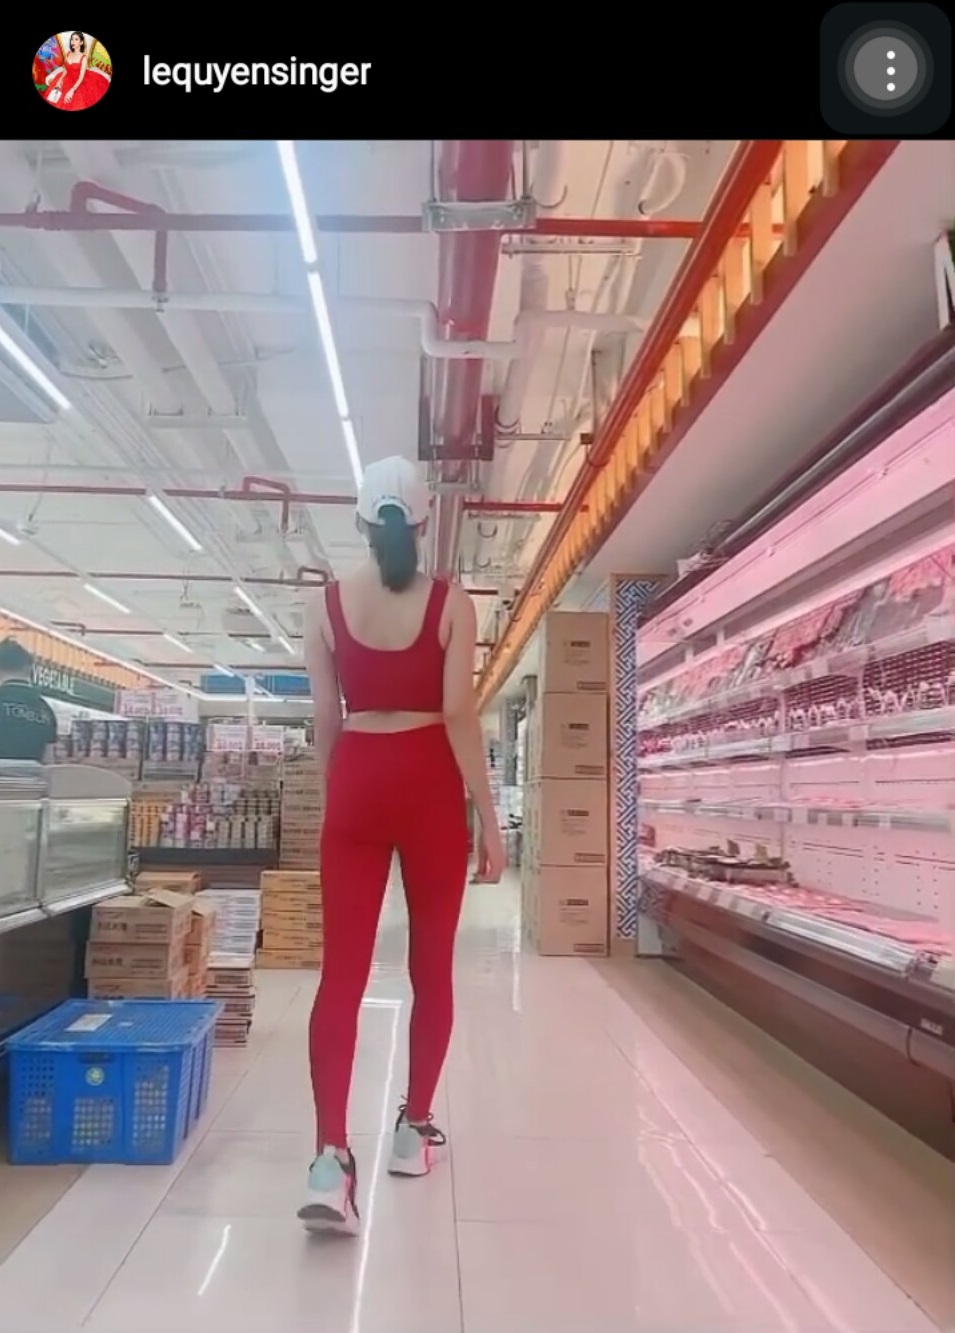 Lệ Quyên - Lâm Bảo Châu: Cặp đôi chân ái đi siêu thị là phụ, chụp ảnh khoe dáng là chính - Ảnh 1